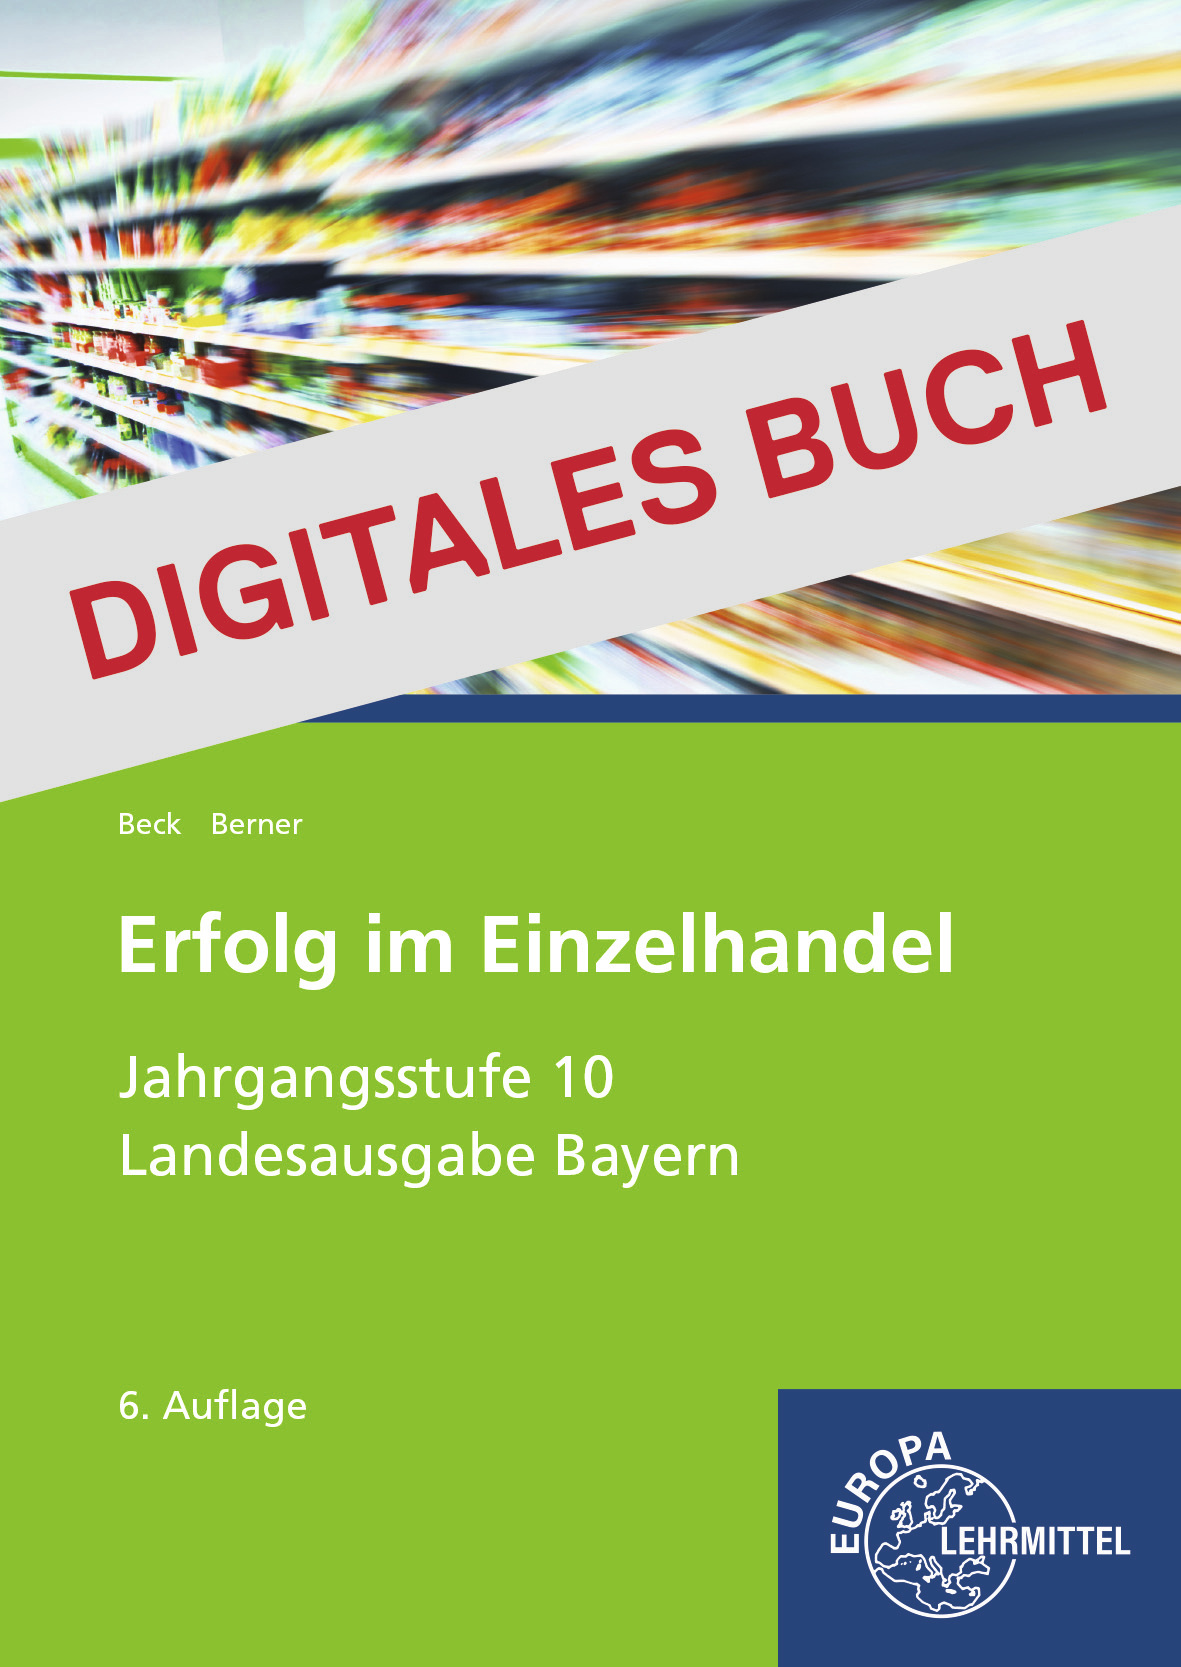 Erfolg im Einzelhandel Jgst. 10 (Bayernausgabe) - Digitales Buch